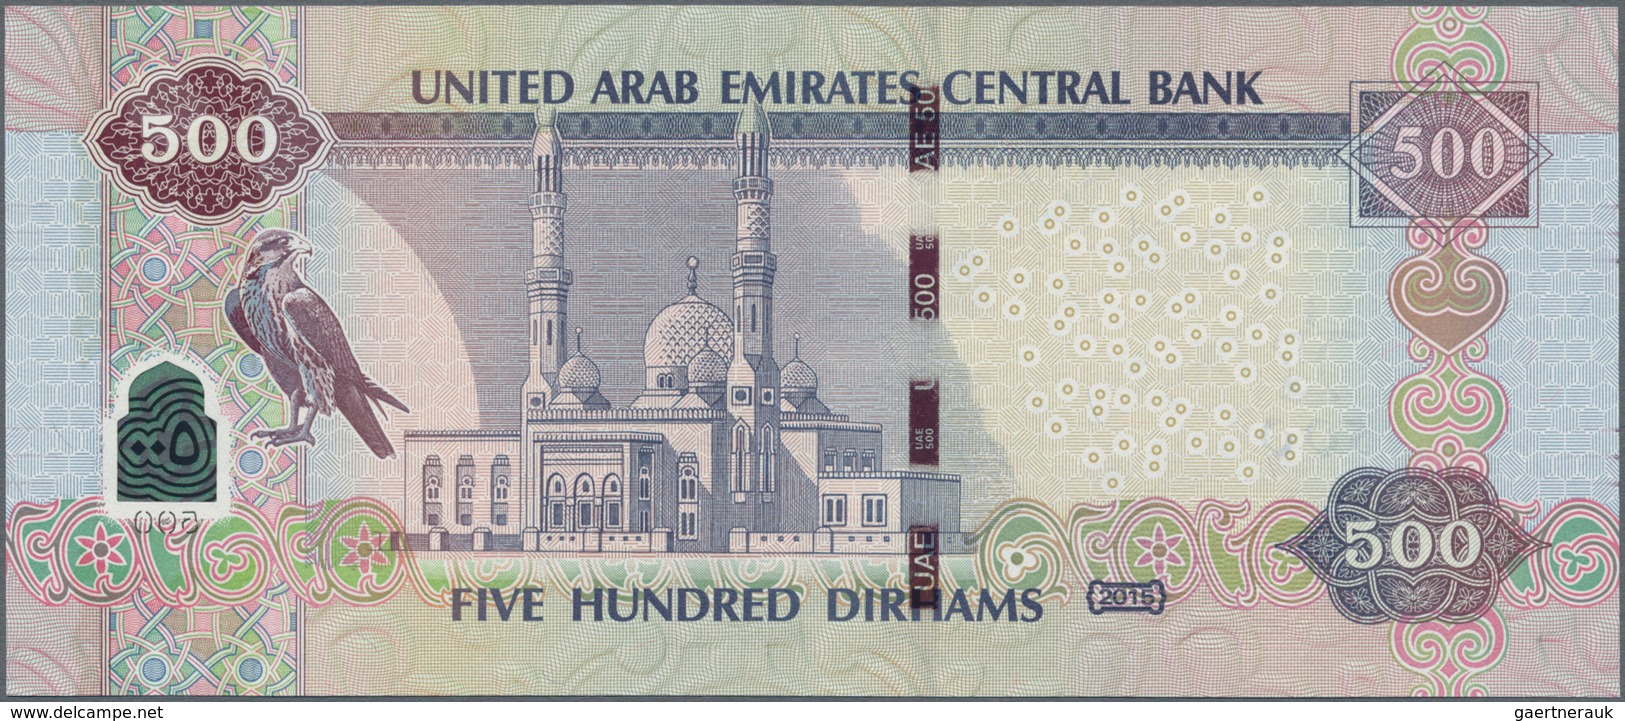 United Arab Emirates / Vereinigte Arabische Emirate: United Arab Emirates Central Bank 500 Dirhams 2 - Ver. Arab. Emirate